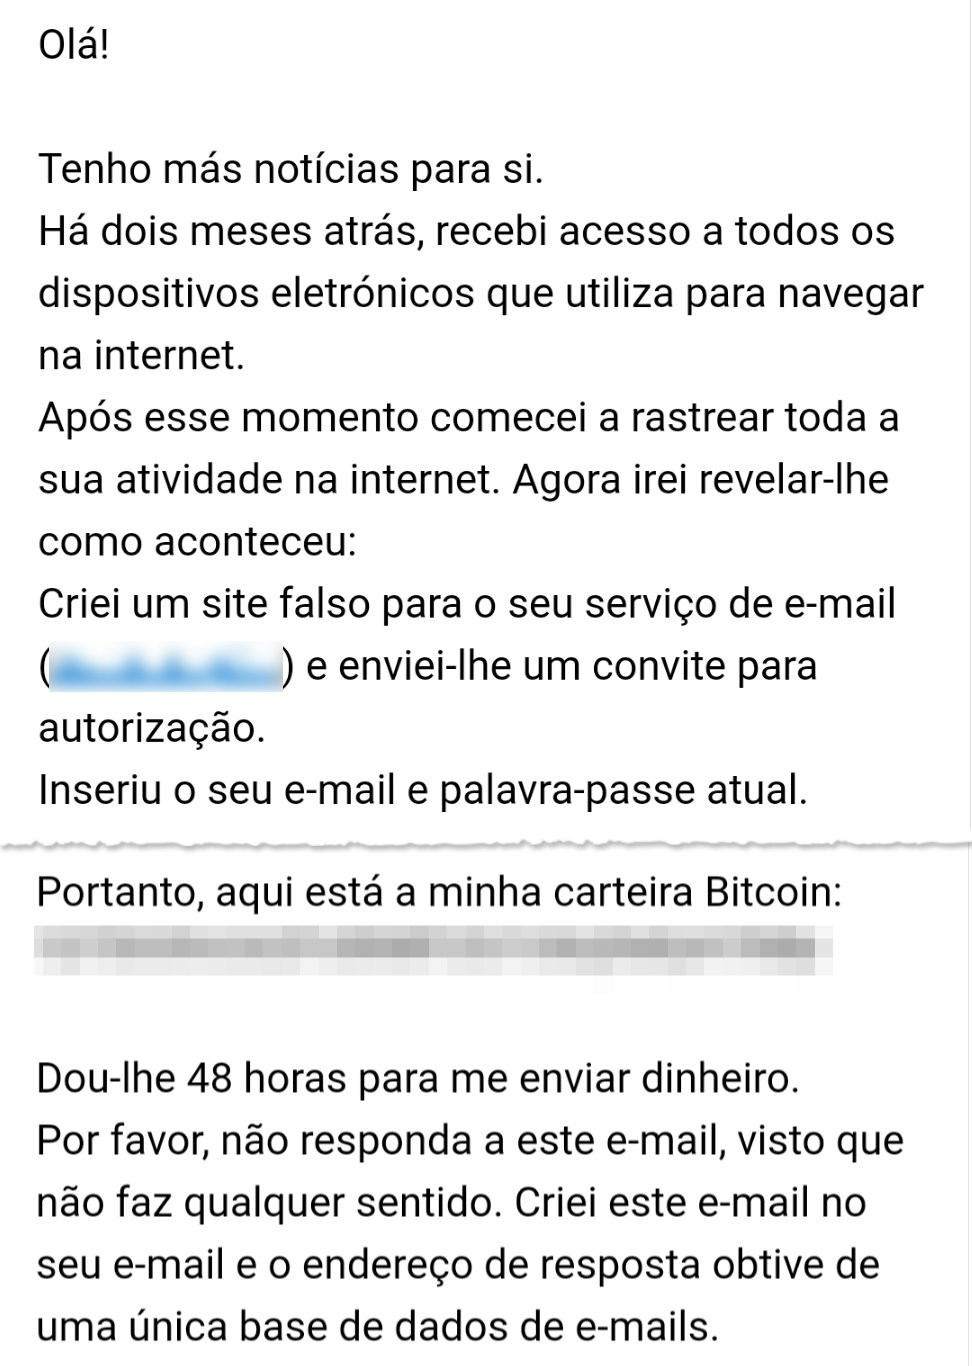 Hackers podem ter faturado R$ 50 mil com ameaça falsa de divulgação de vídeo íntimo enviada a brasileiros thumbnail